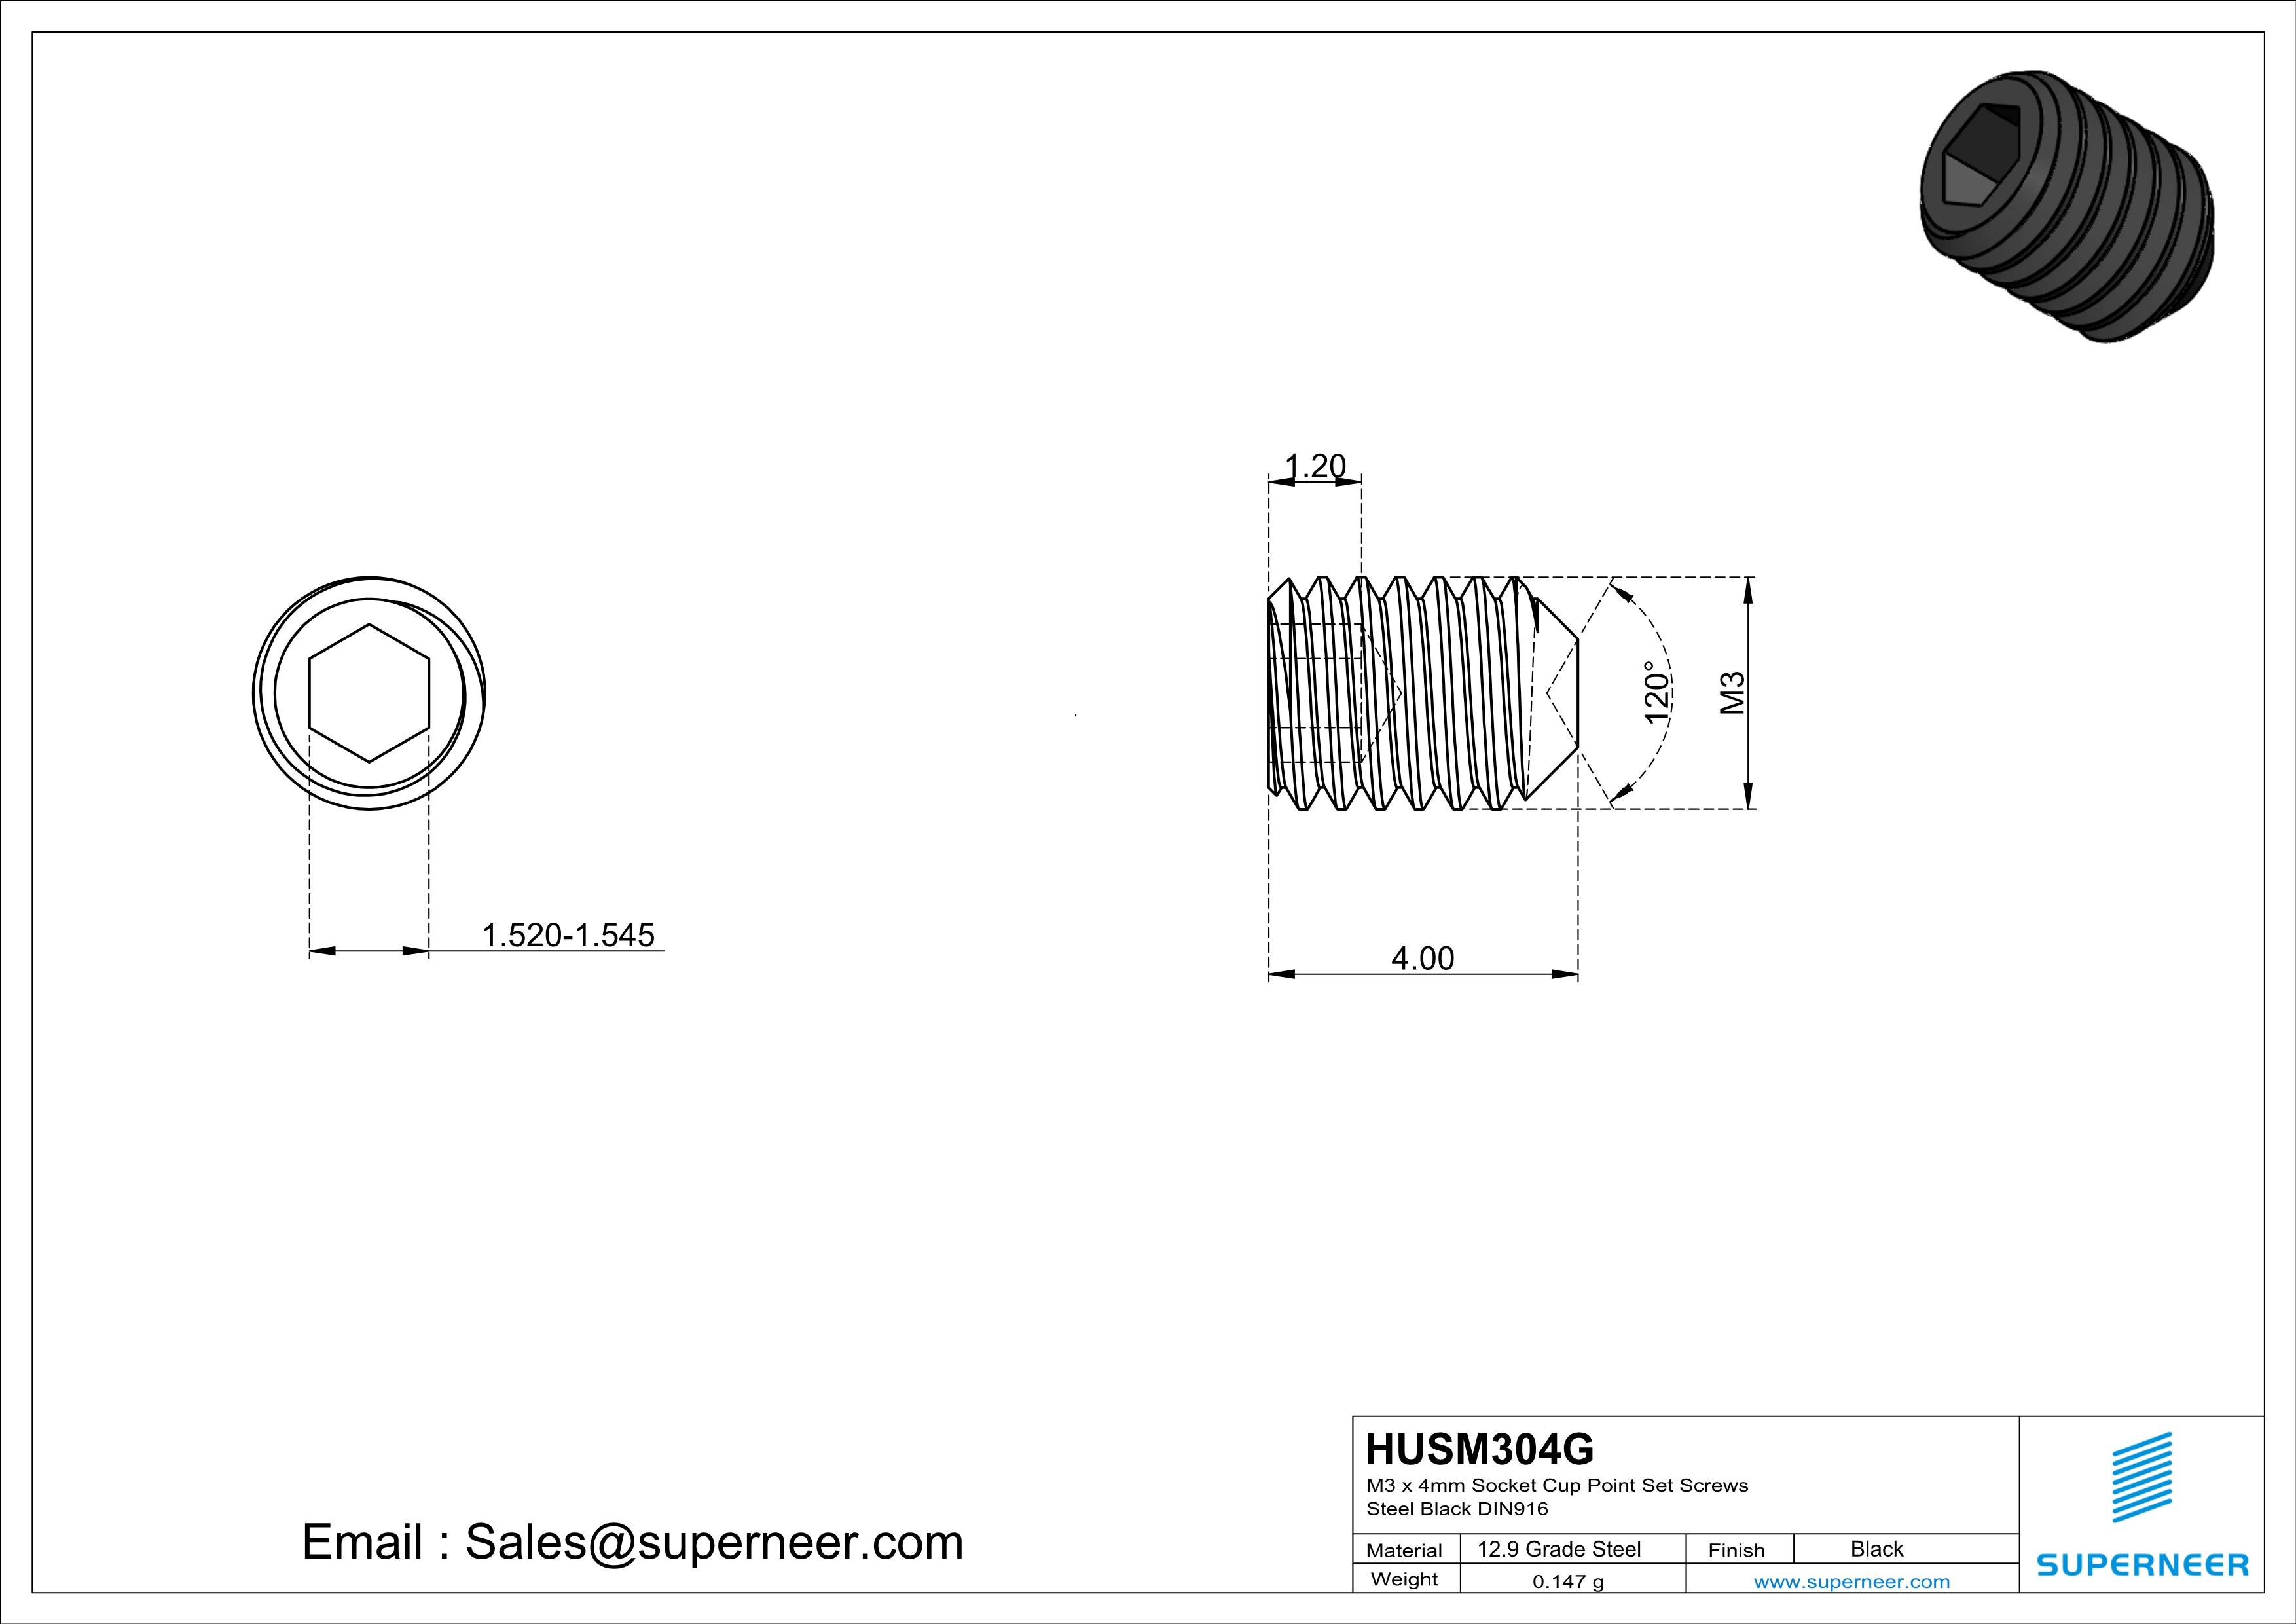 M3 x 4mm Socket Cup Point Set Screws 12.9 Carbon Steel Black DIN916